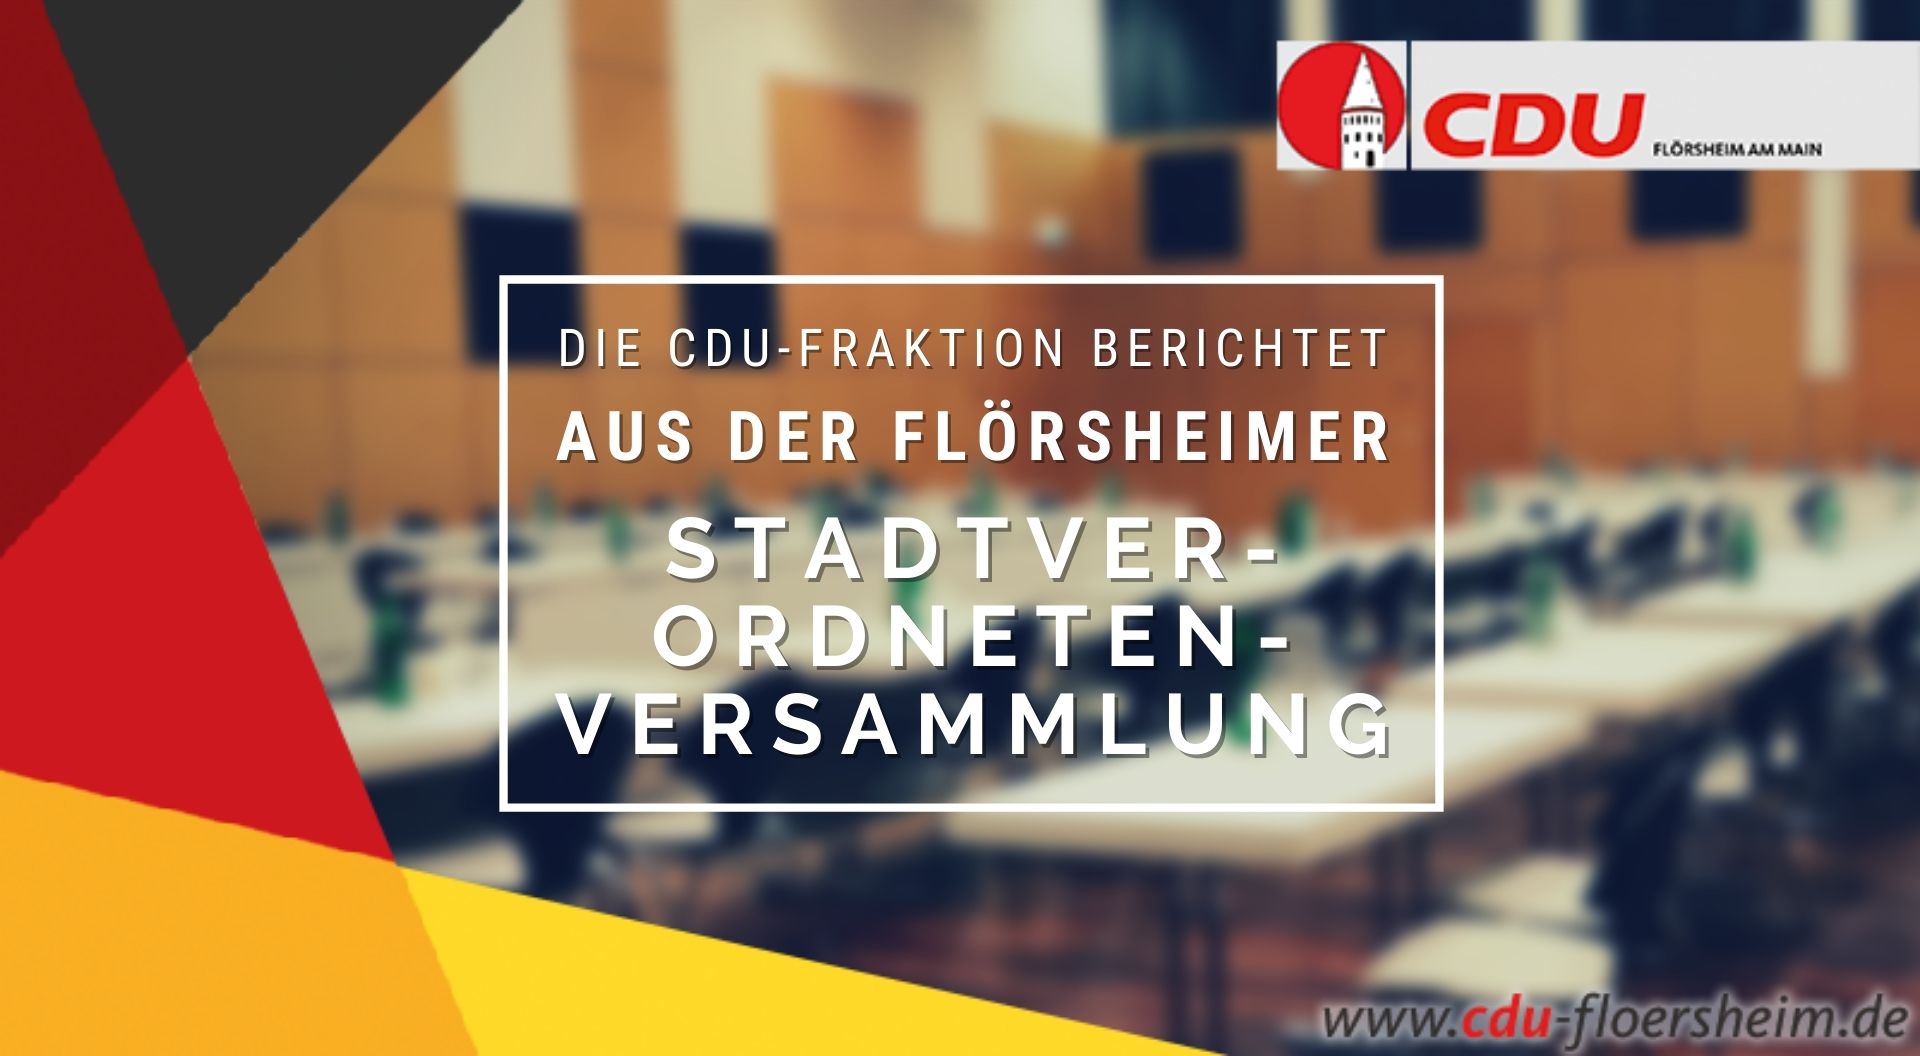 Stadtverordnetenversammlung: Flörsheimer Fraktionen einigen sich auf Pairing-Verfahren